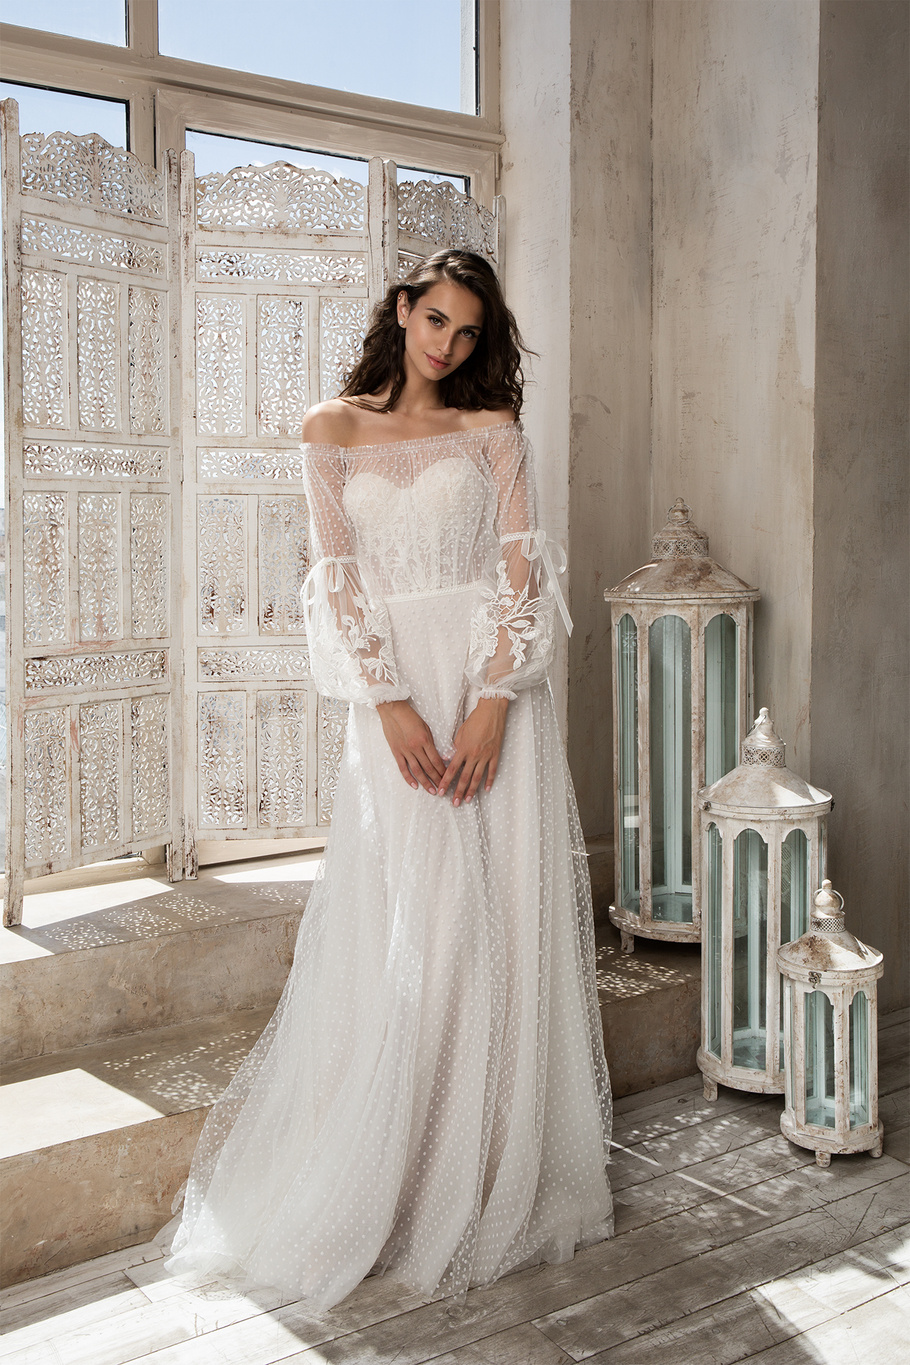 Купить свадебное платье «Харпер» Татьяны Каплун из коллекции «Даймонд Скай» 2020 в салоне